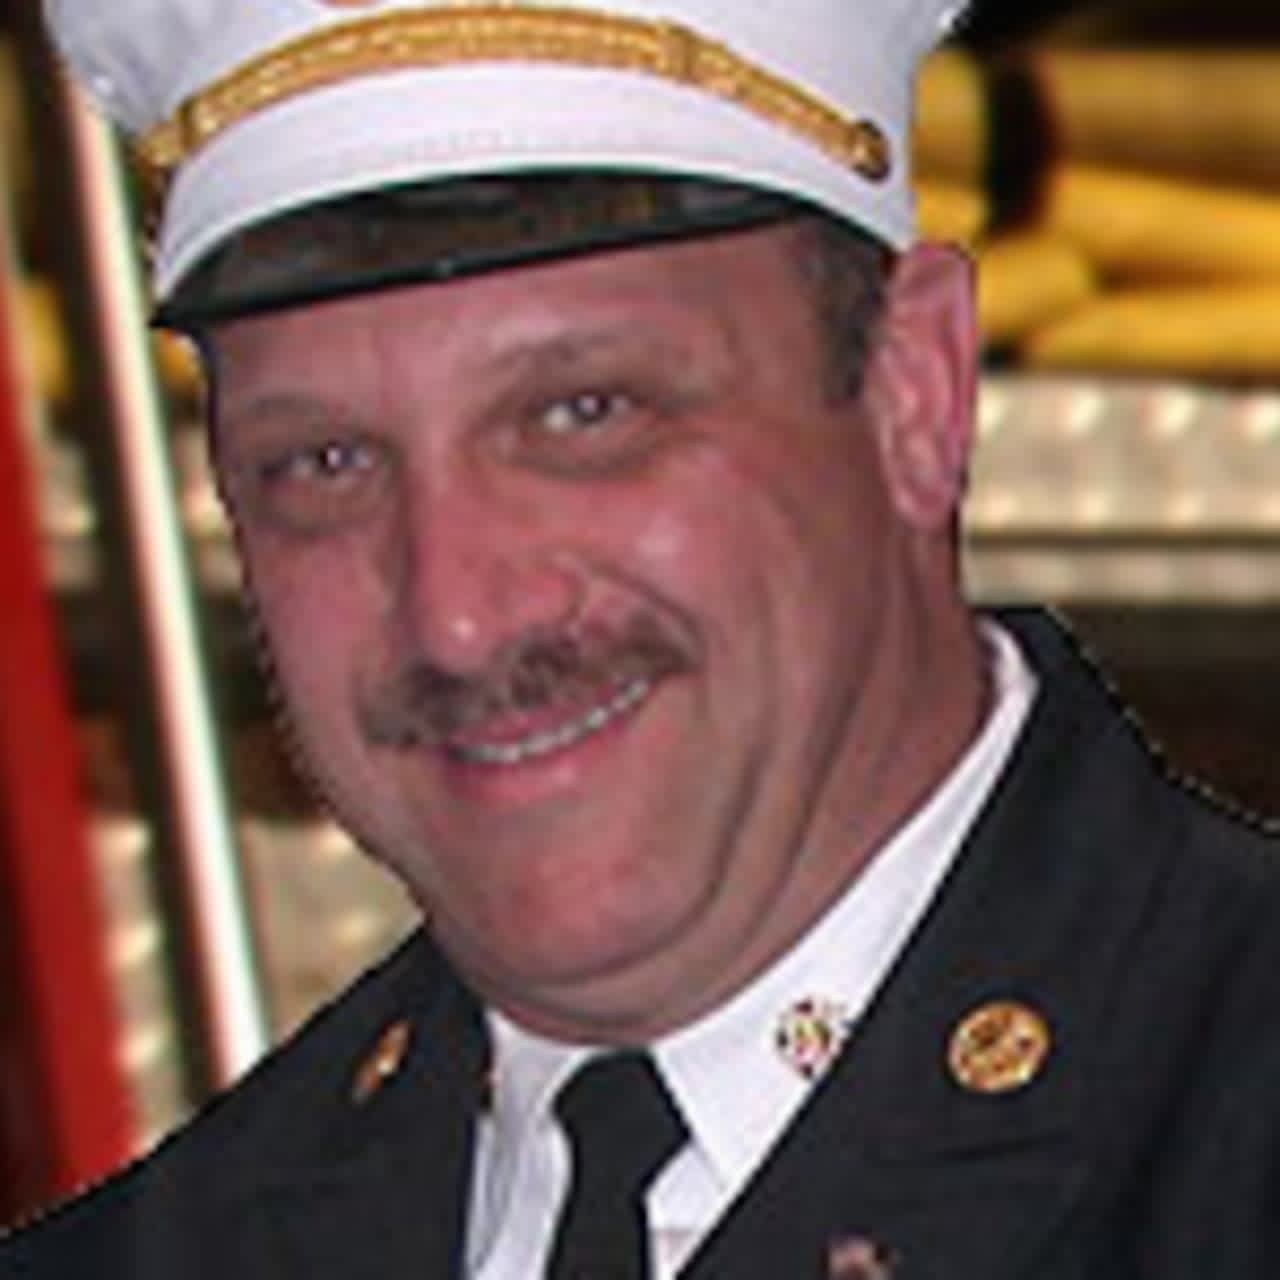 Wilton Fire Chief Ron Kanterman